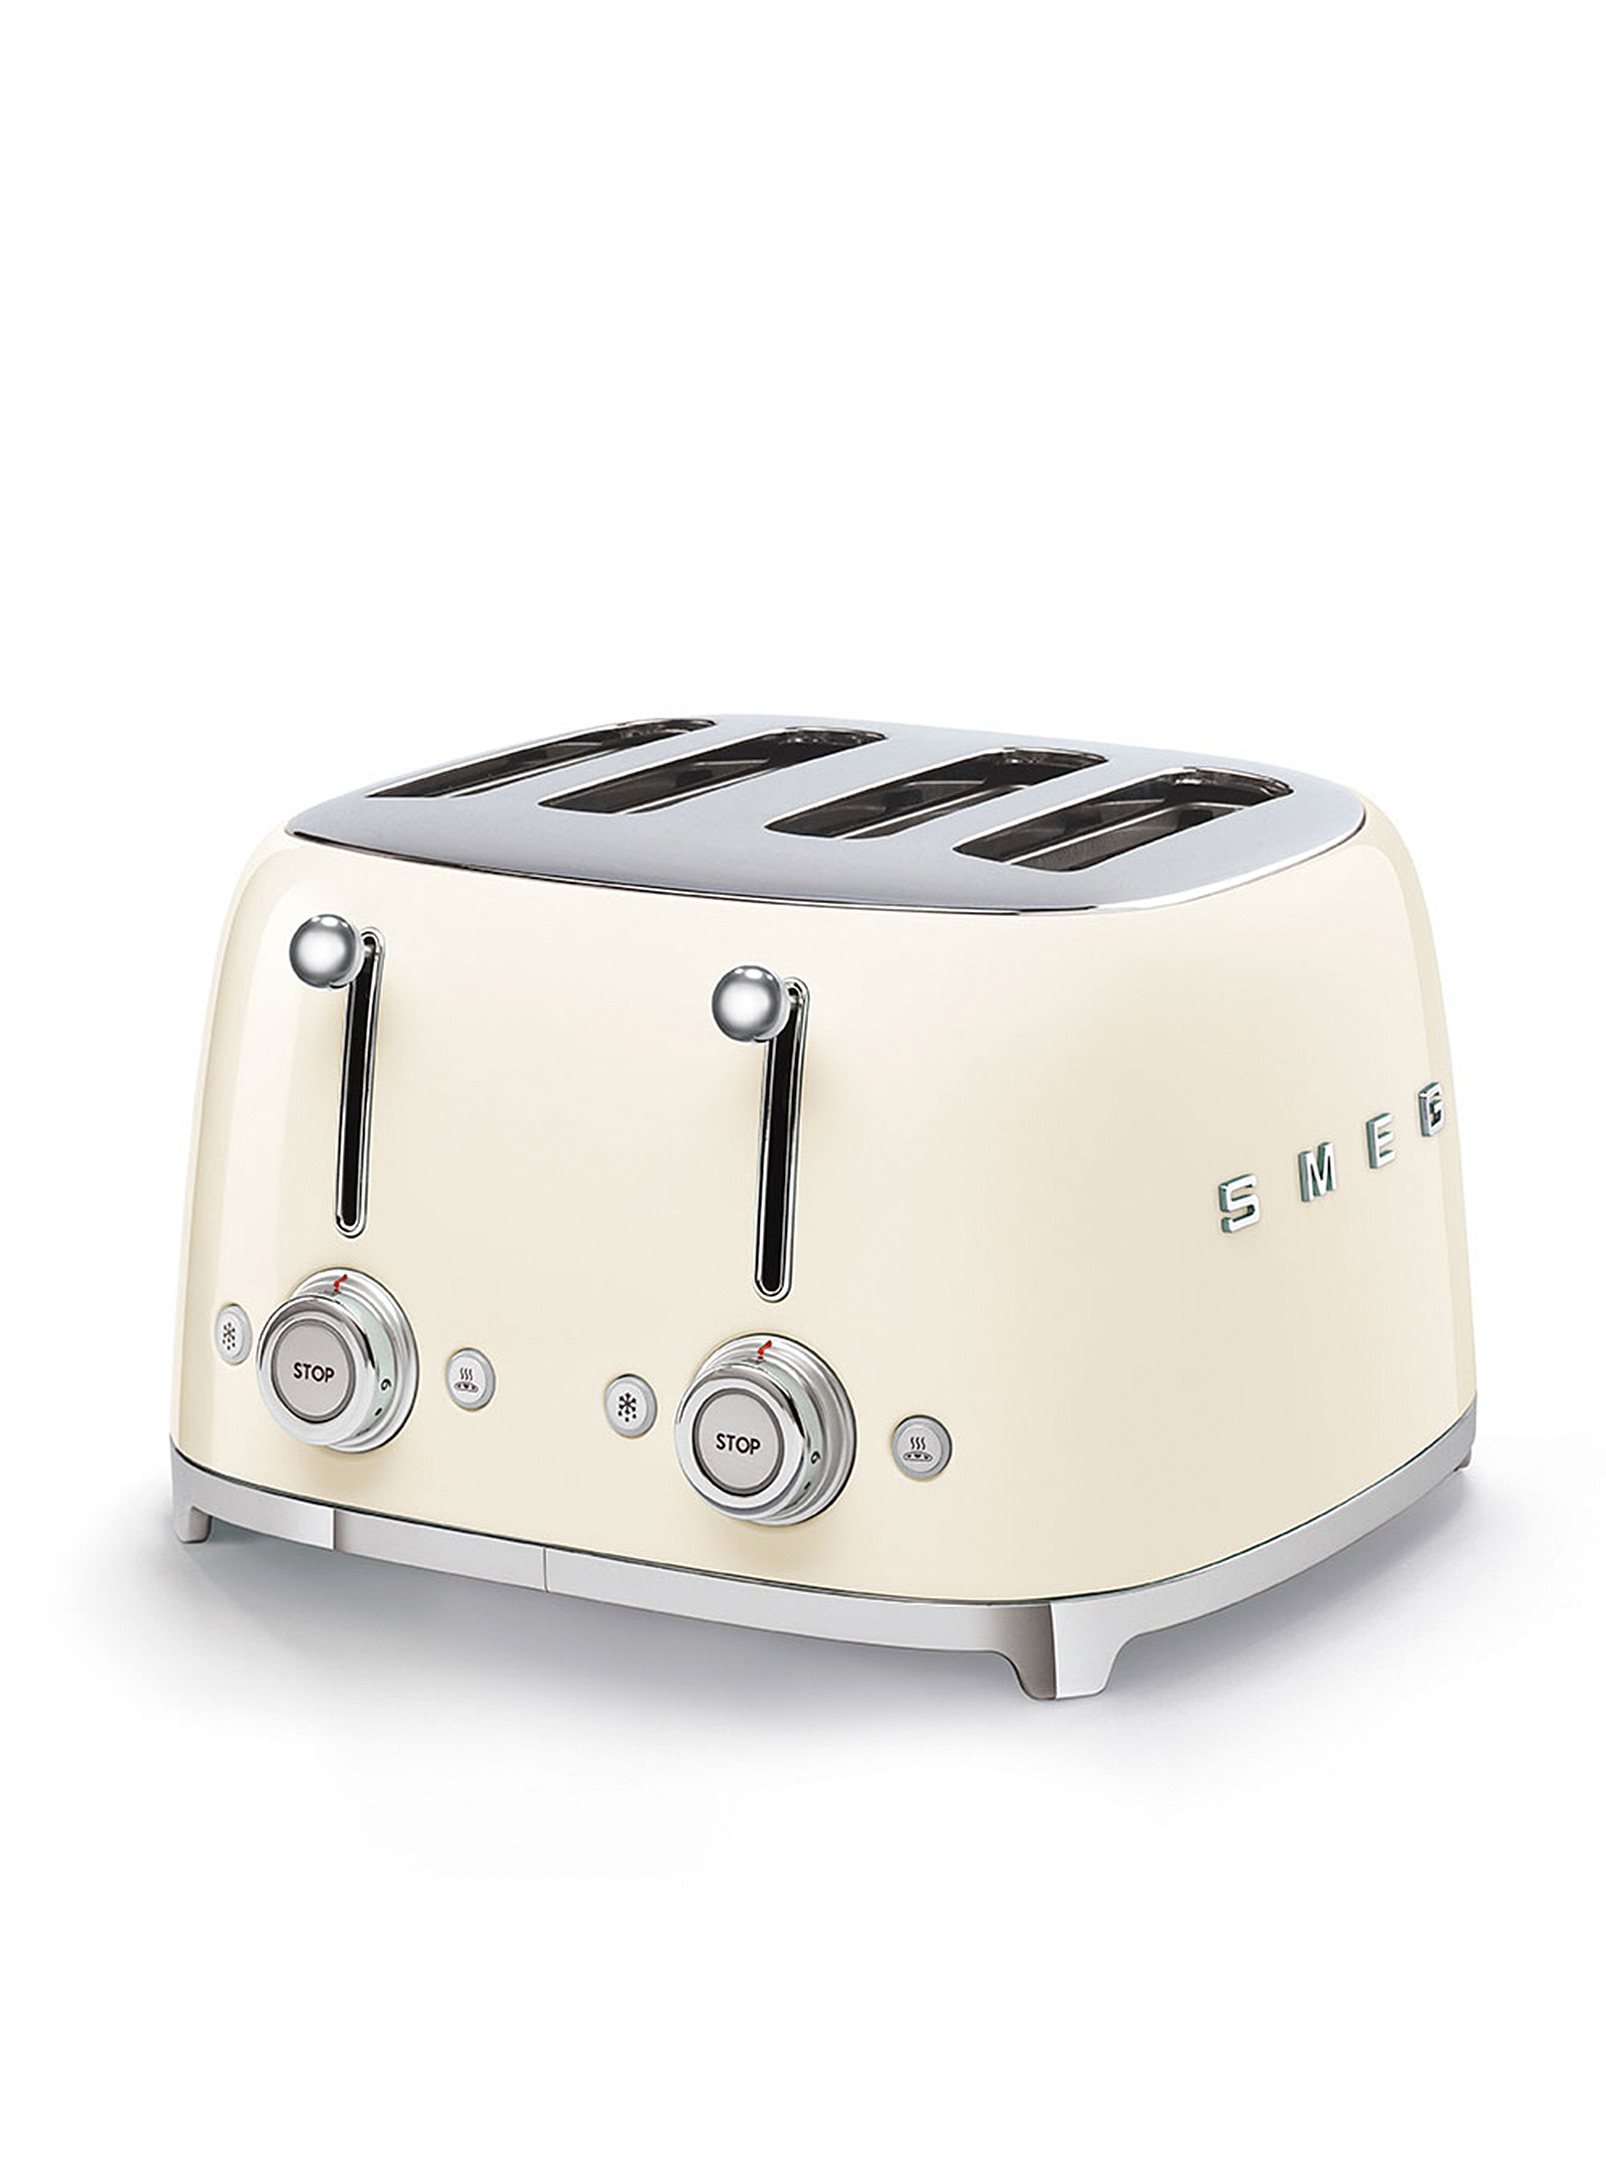 Smeg Retro 4-slice Toaster In Ivory White